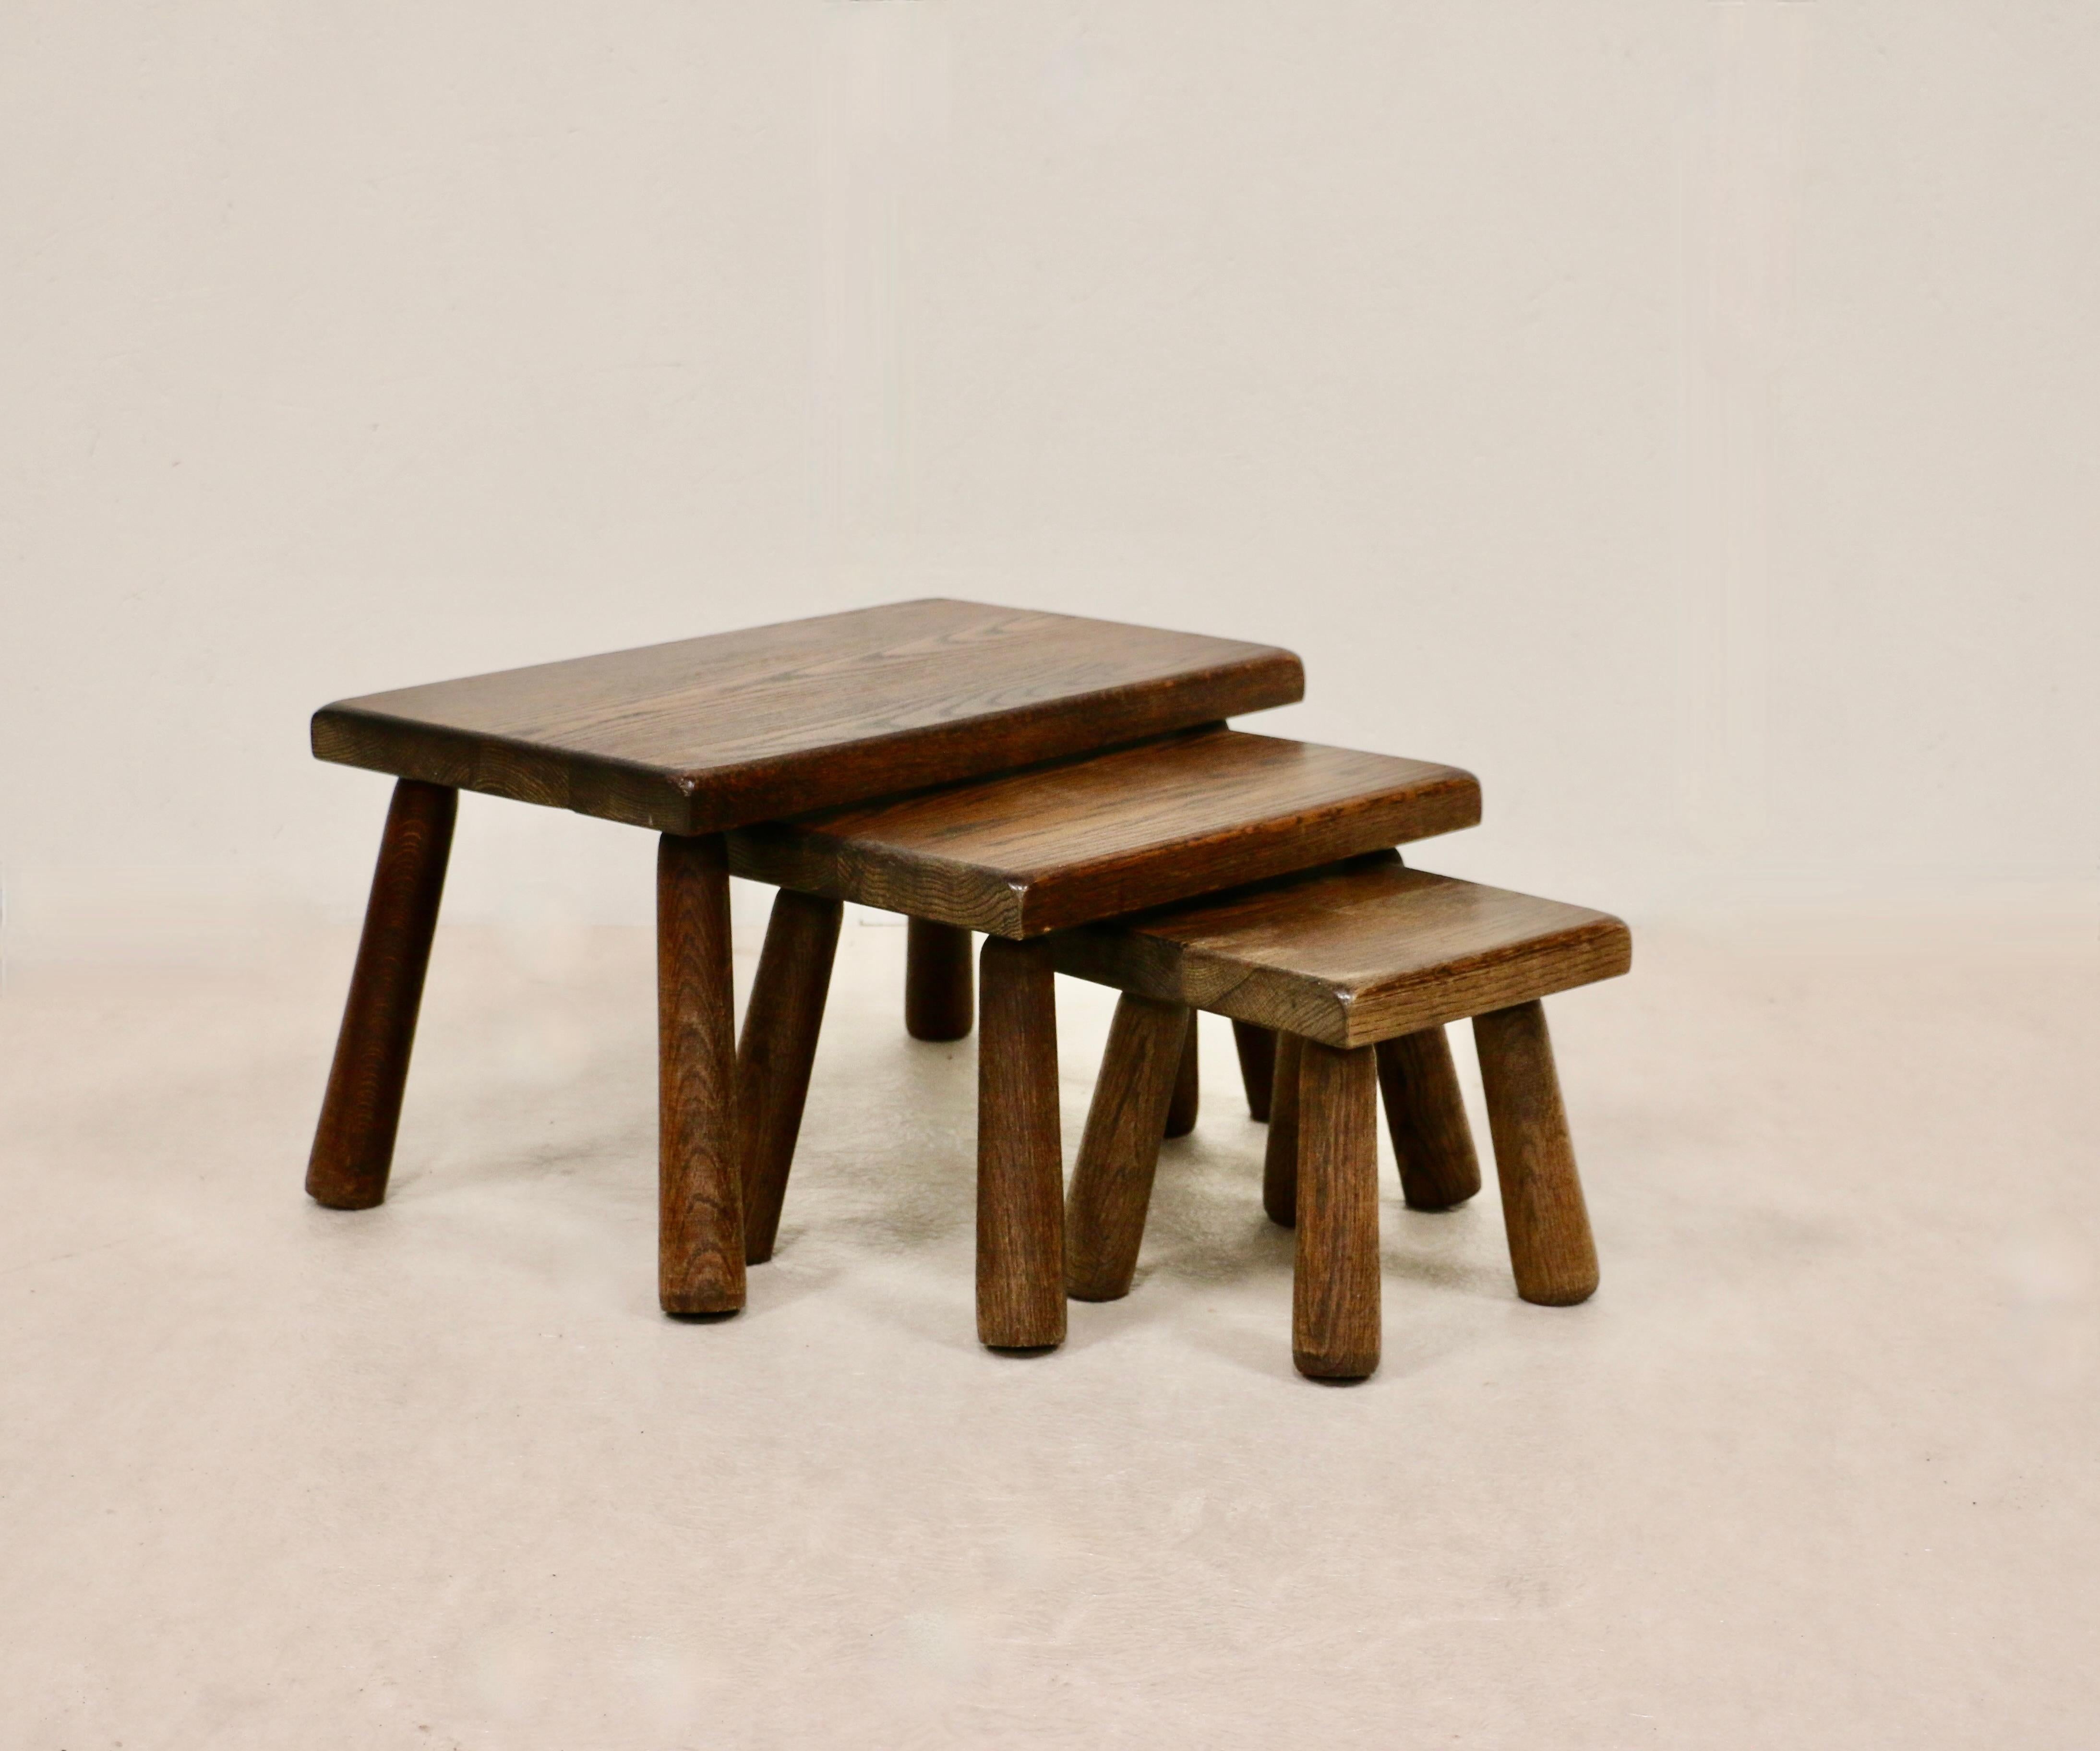 Une série de trois tables gigognes en chêne foncé.
Pieds cylindriques. France années 60.